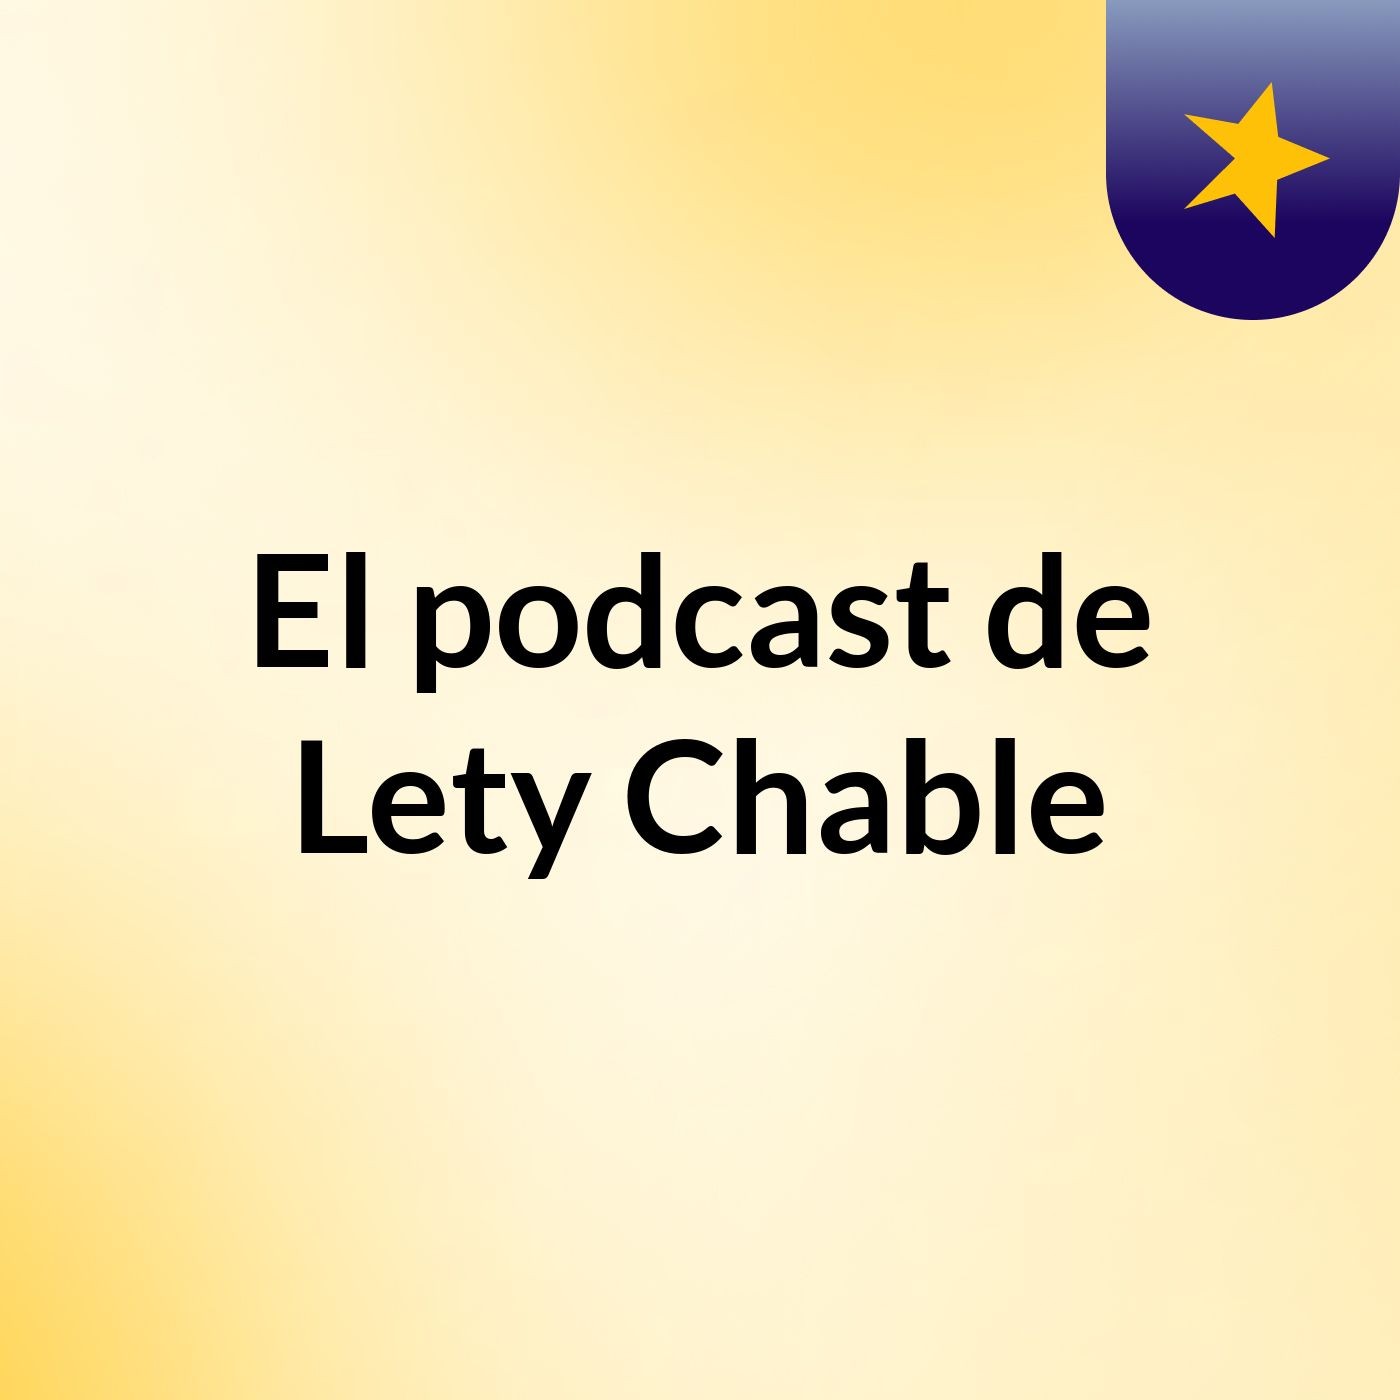 Continuacio Del Estudio- El podcast de Lety Chable